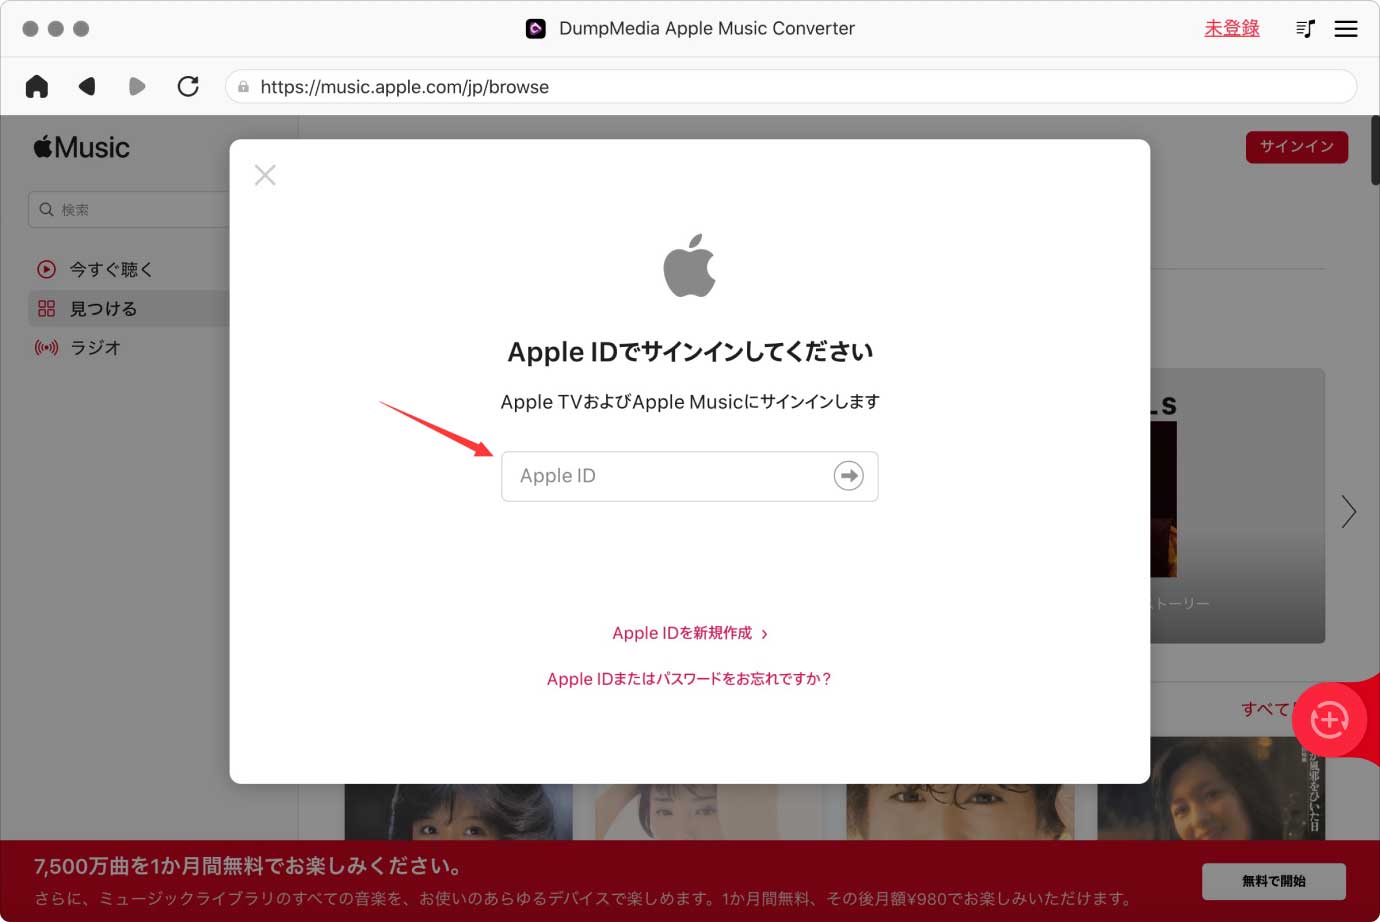 ソフトを起動して、Apple IDでサインインする